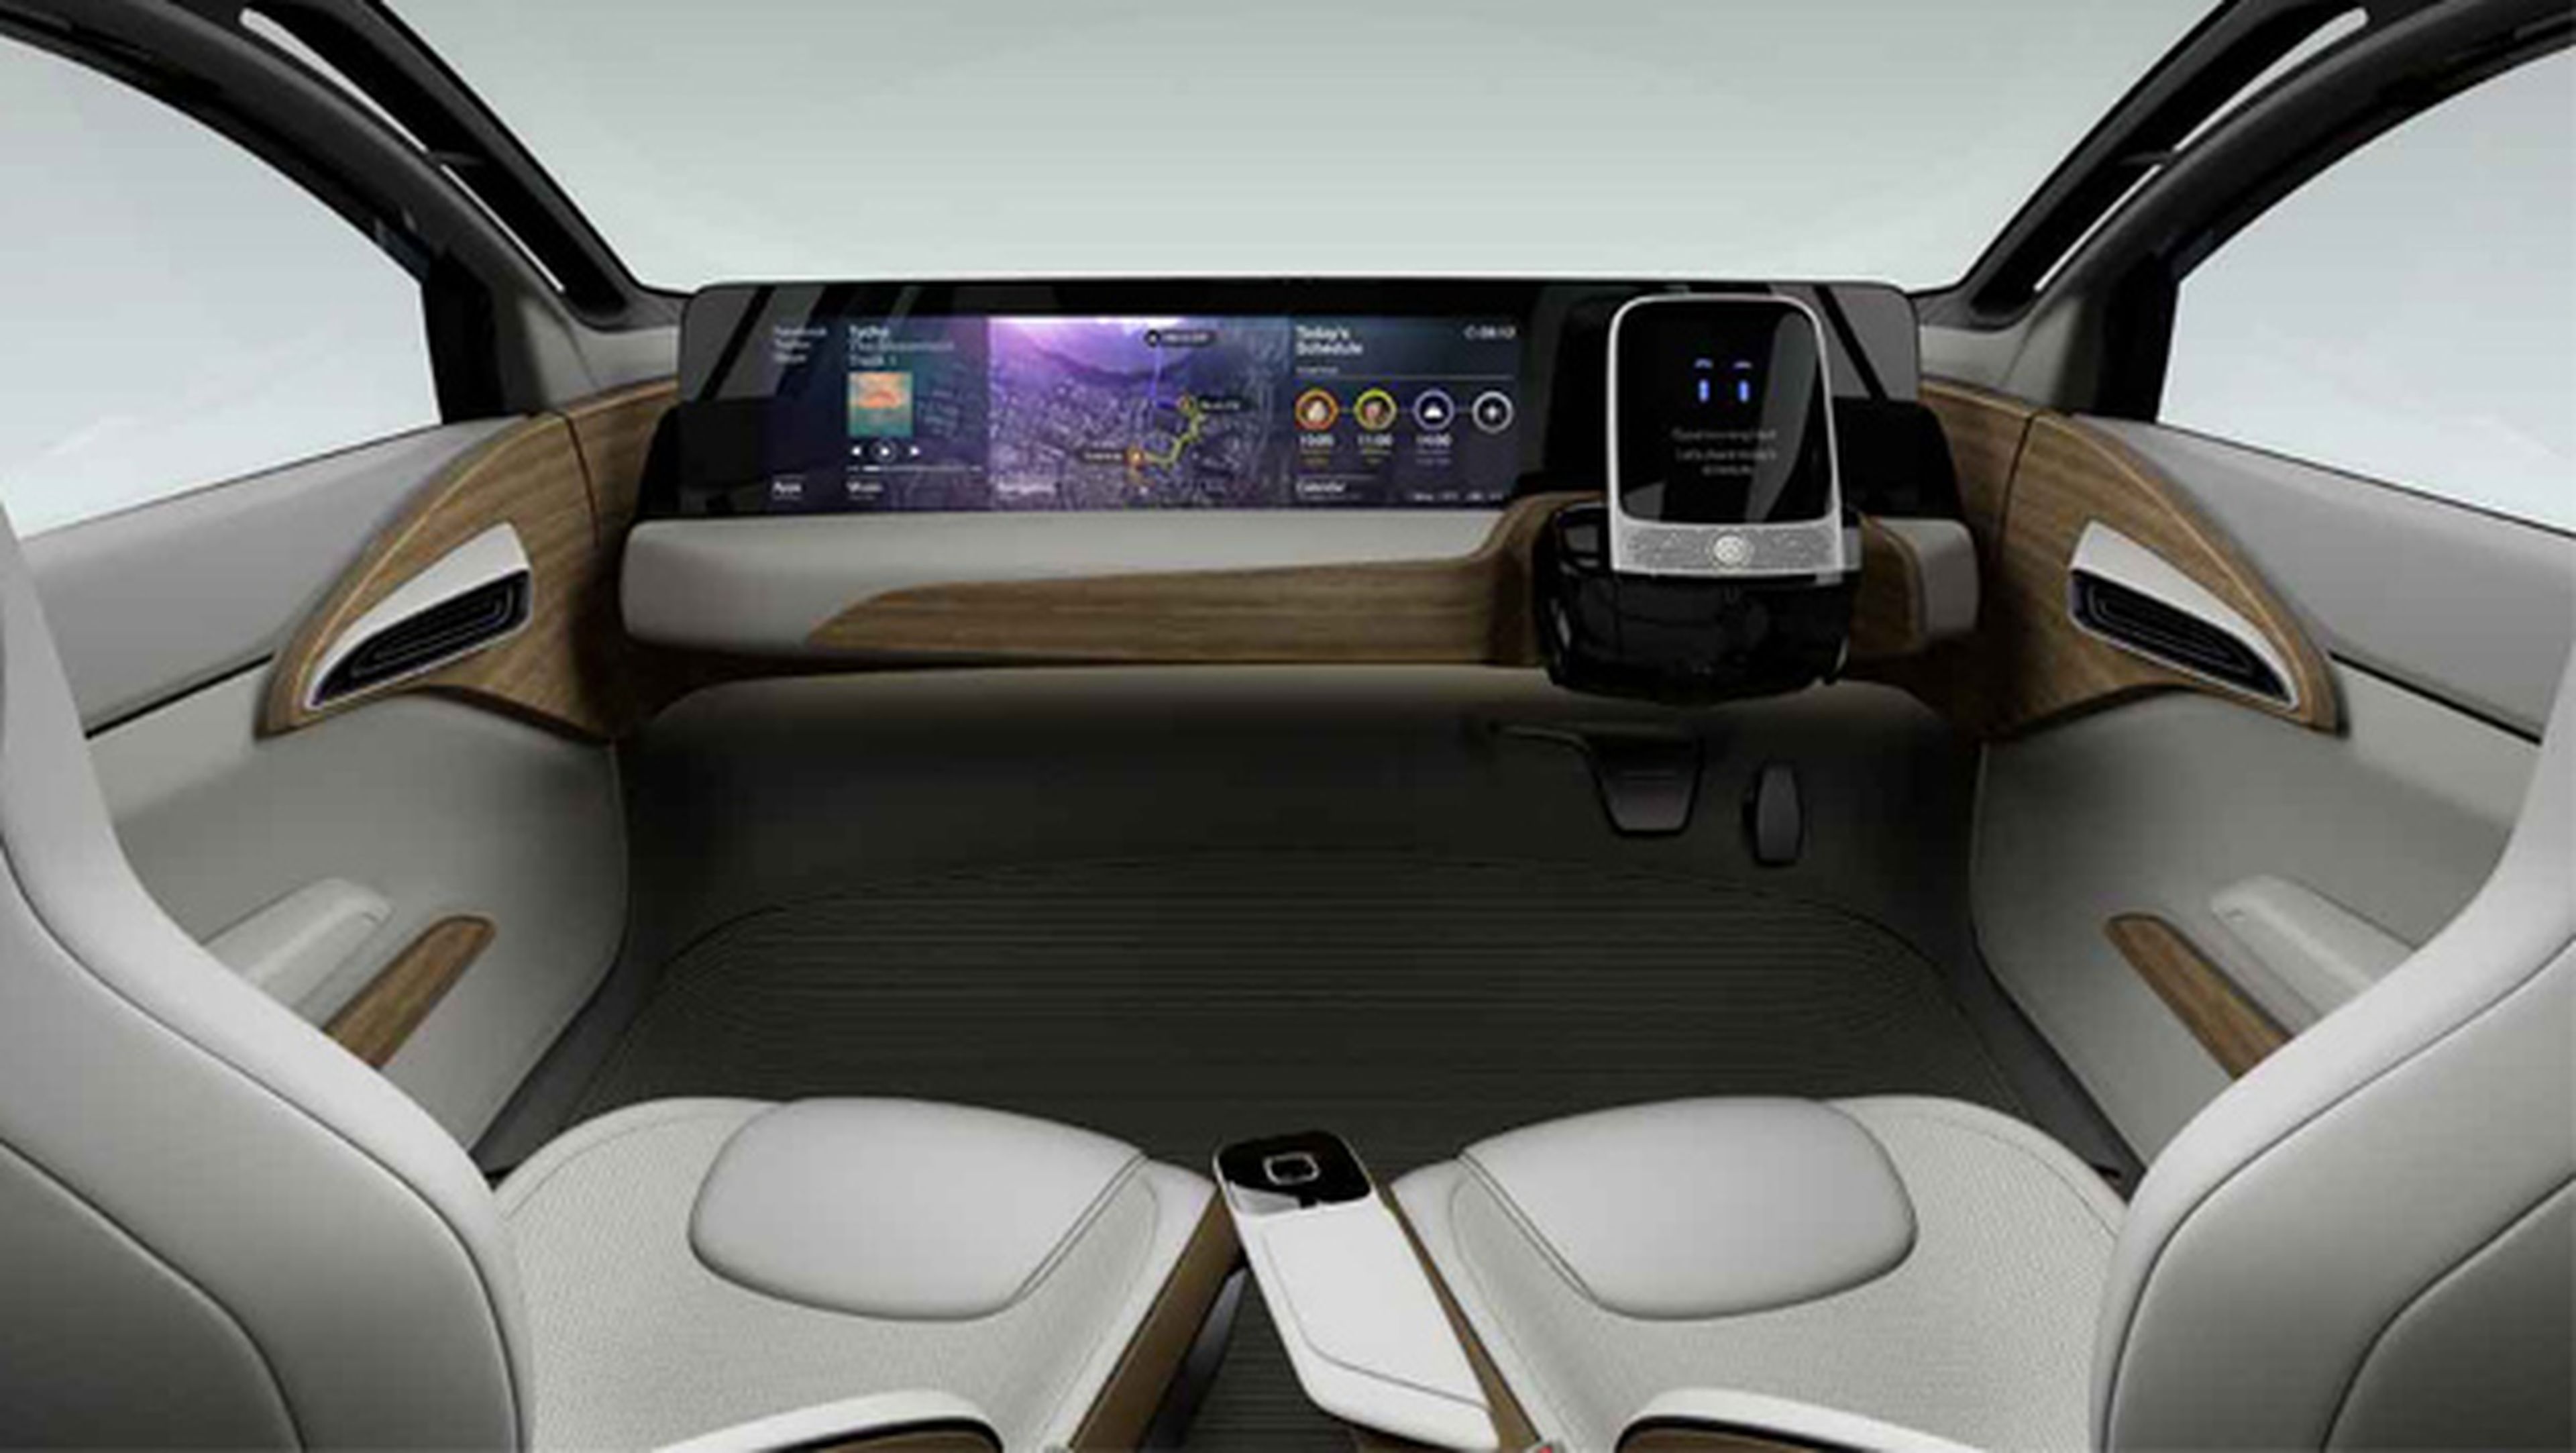 IDS Concept de Nissan reinventa el futuro del coche autónomo